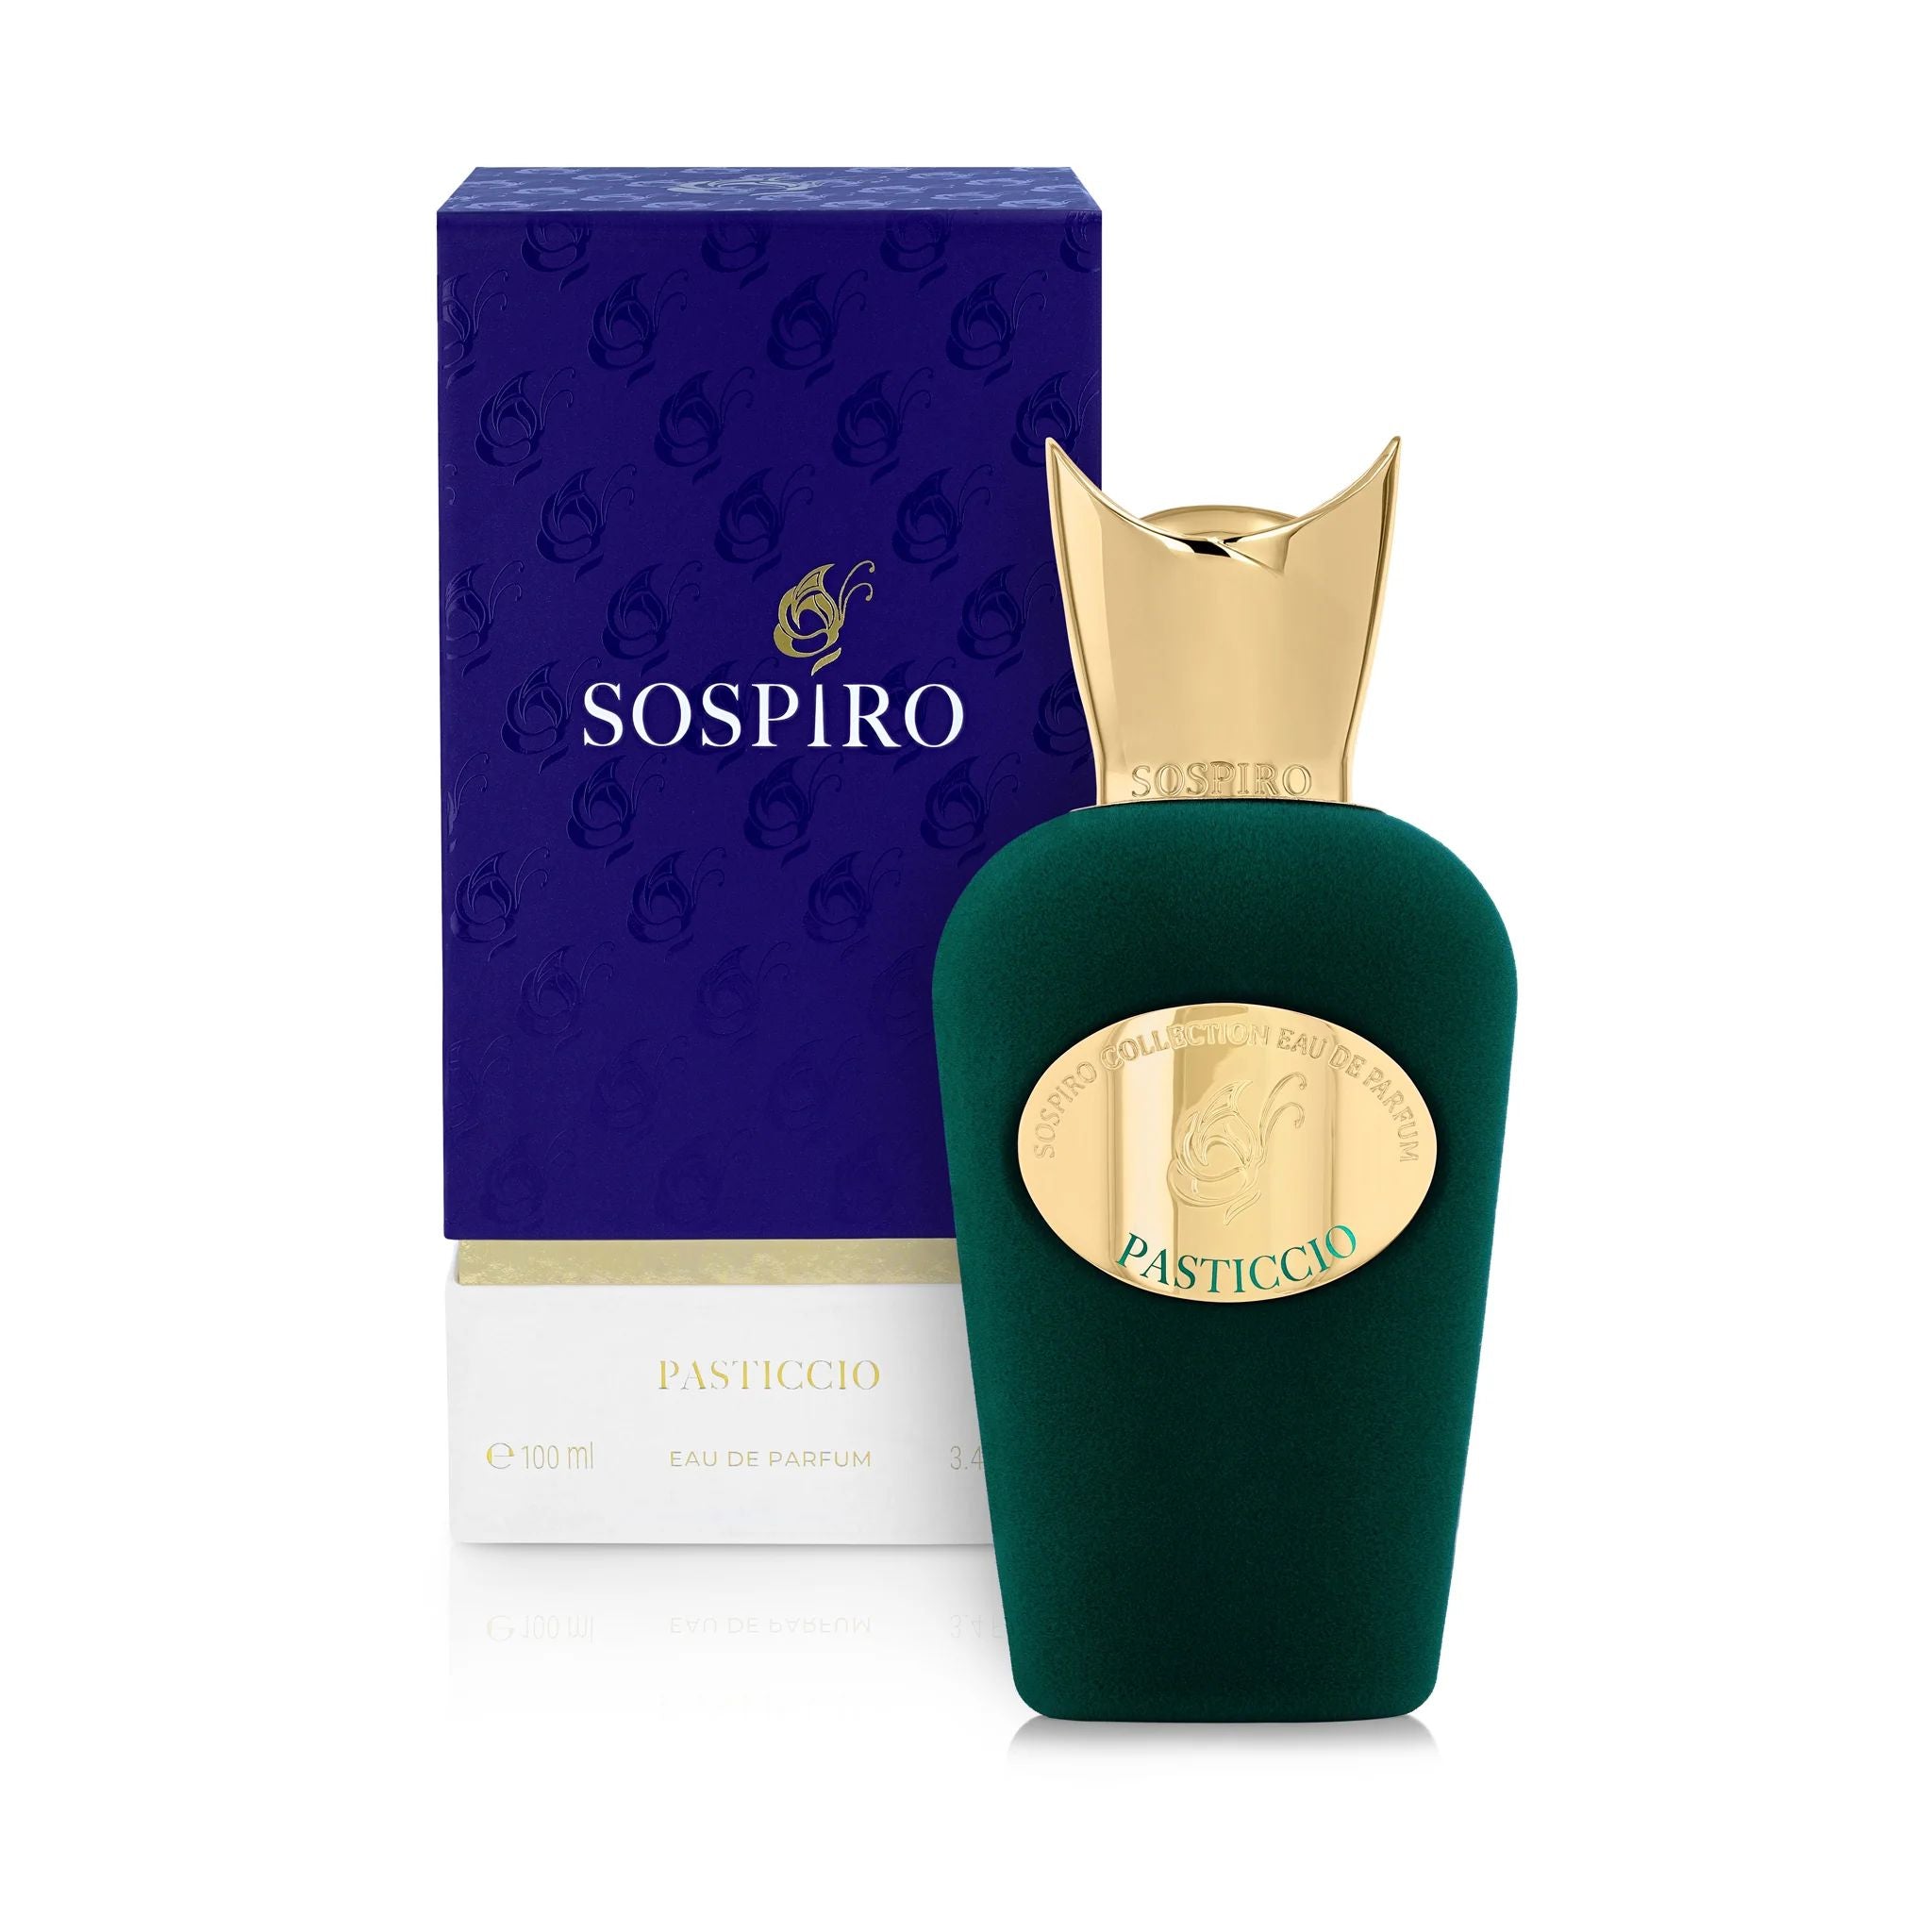 Pasticcio Sospiro Perfume